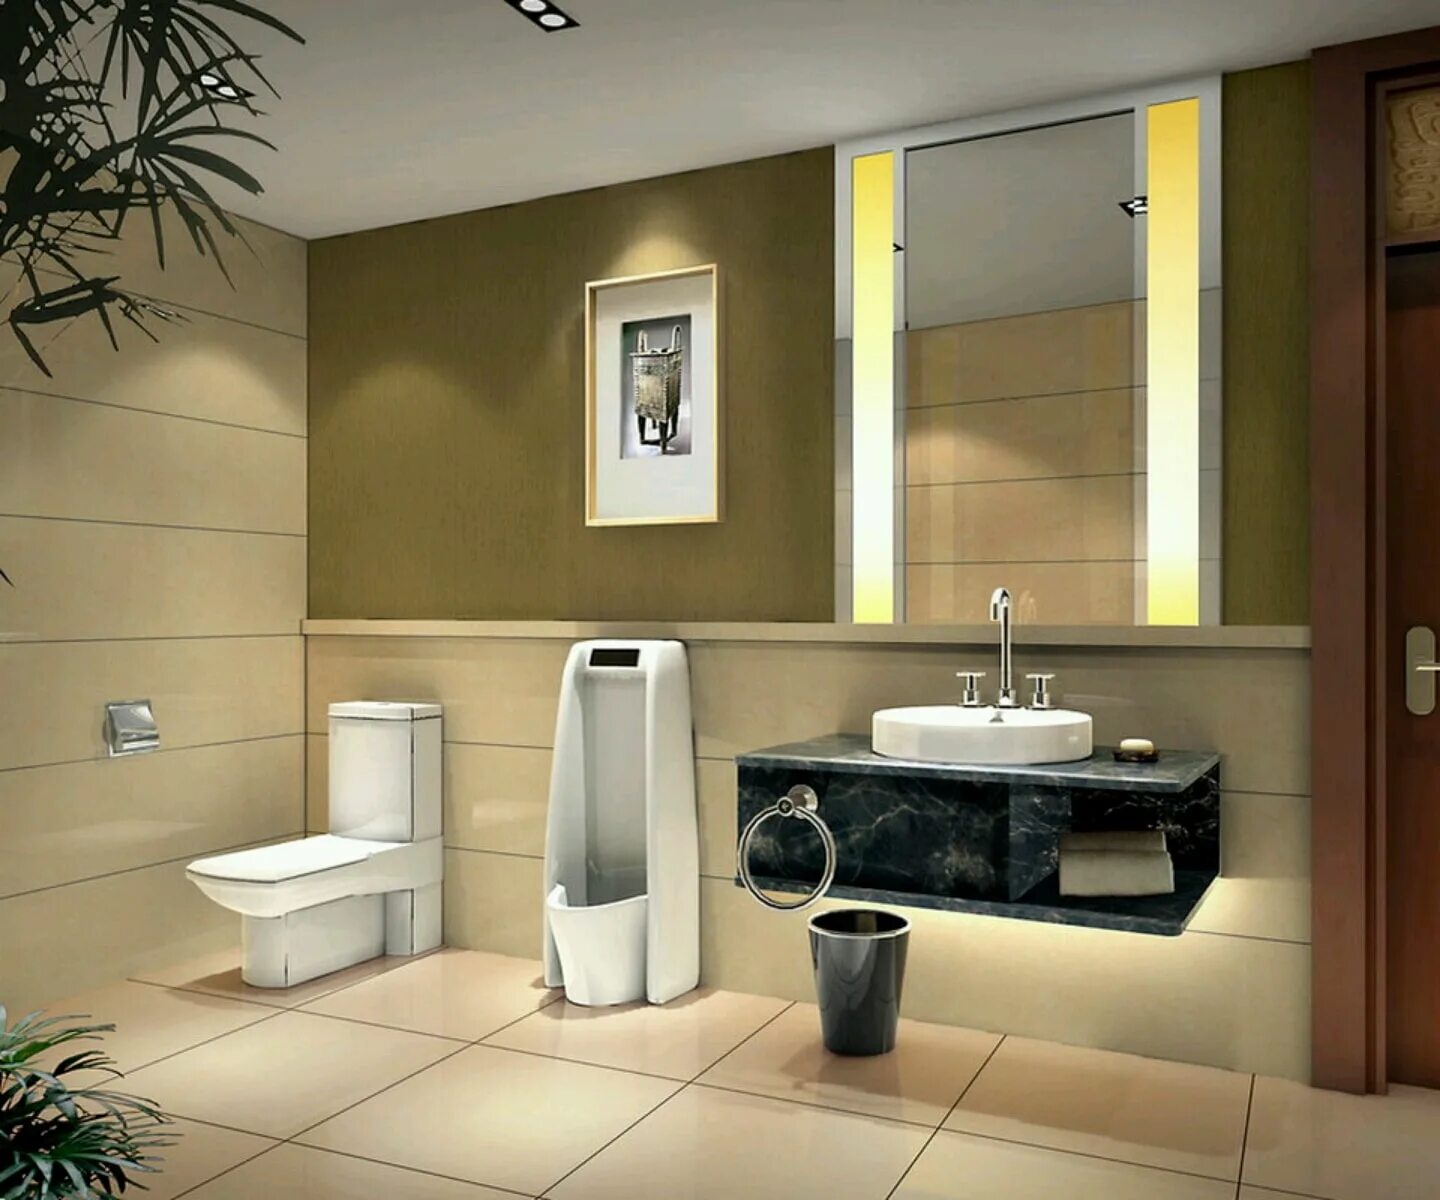 Фото сантехники ванной комнаты. Современная туалетная комната. Интерьер туалета. Сантехника для ванной комнаты. Современная сантехника для ванной комнаты.